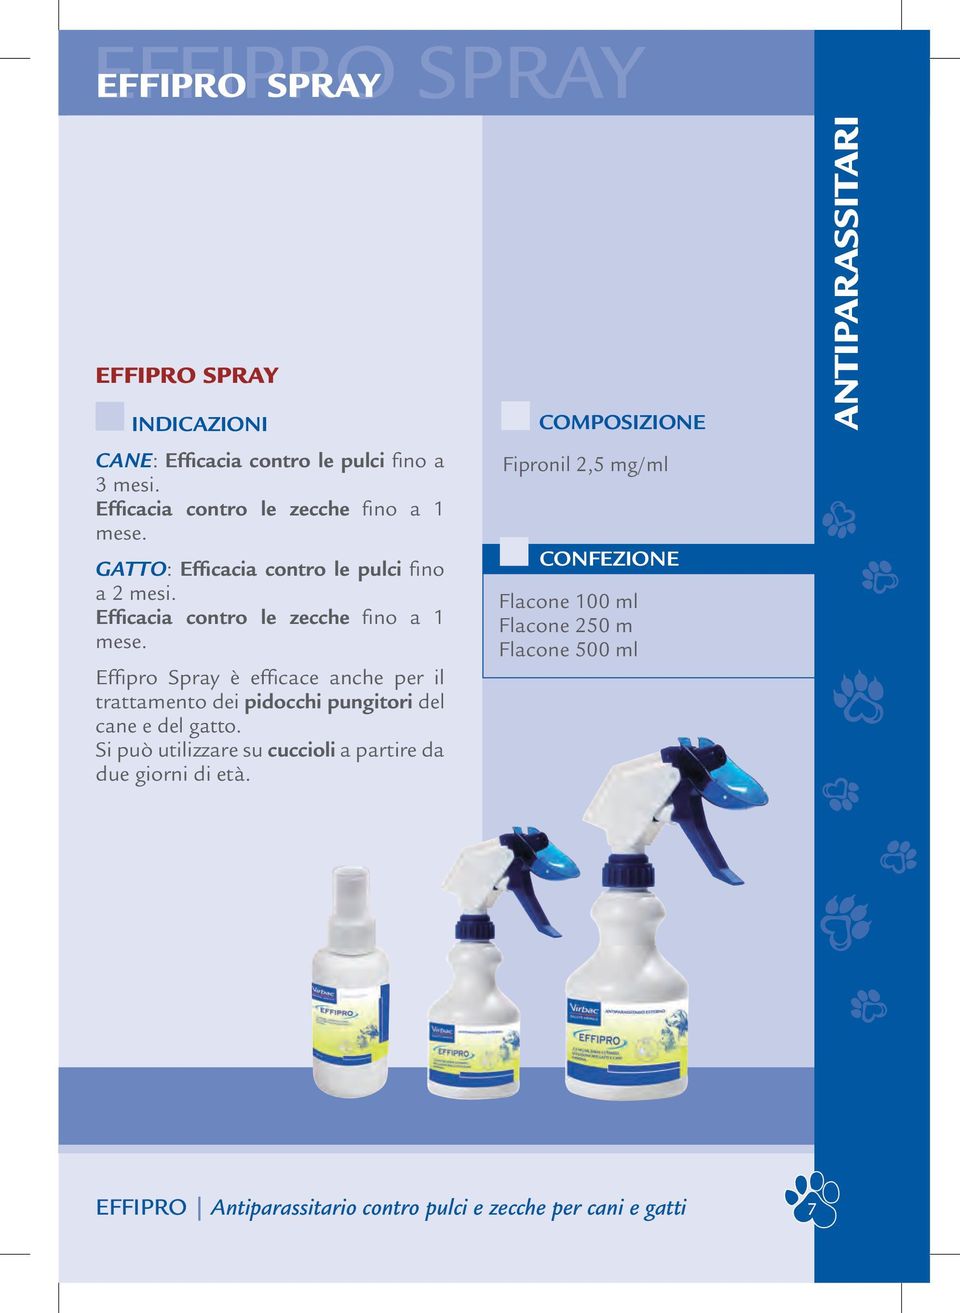 Effipro Spray è efficace anche per il trattamento dei pidocchi pungitori del cane e del gatto.